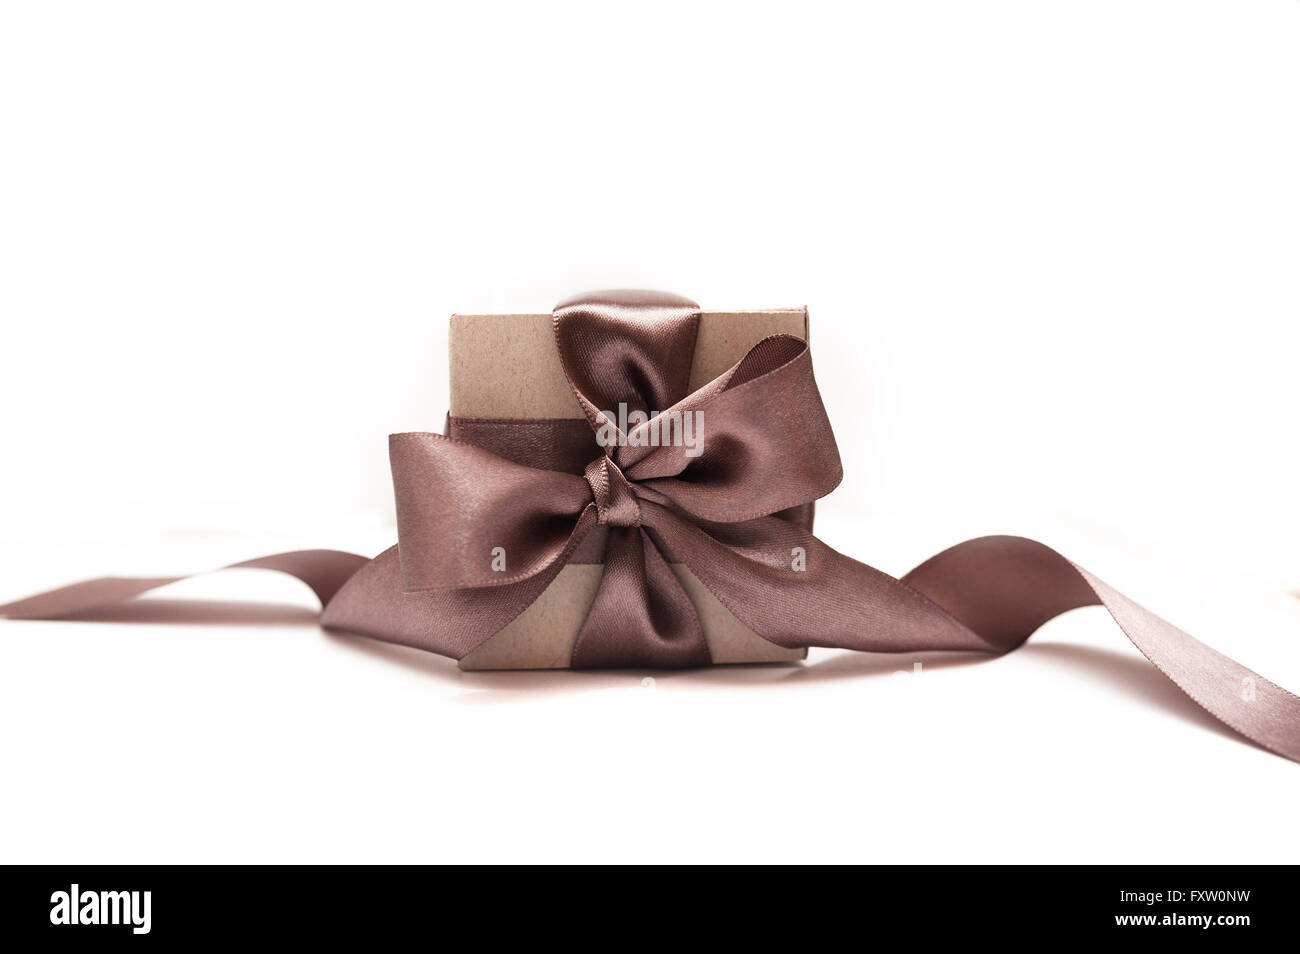 Boîtes cadeaux avec brown bow on a white background Banque D'Images